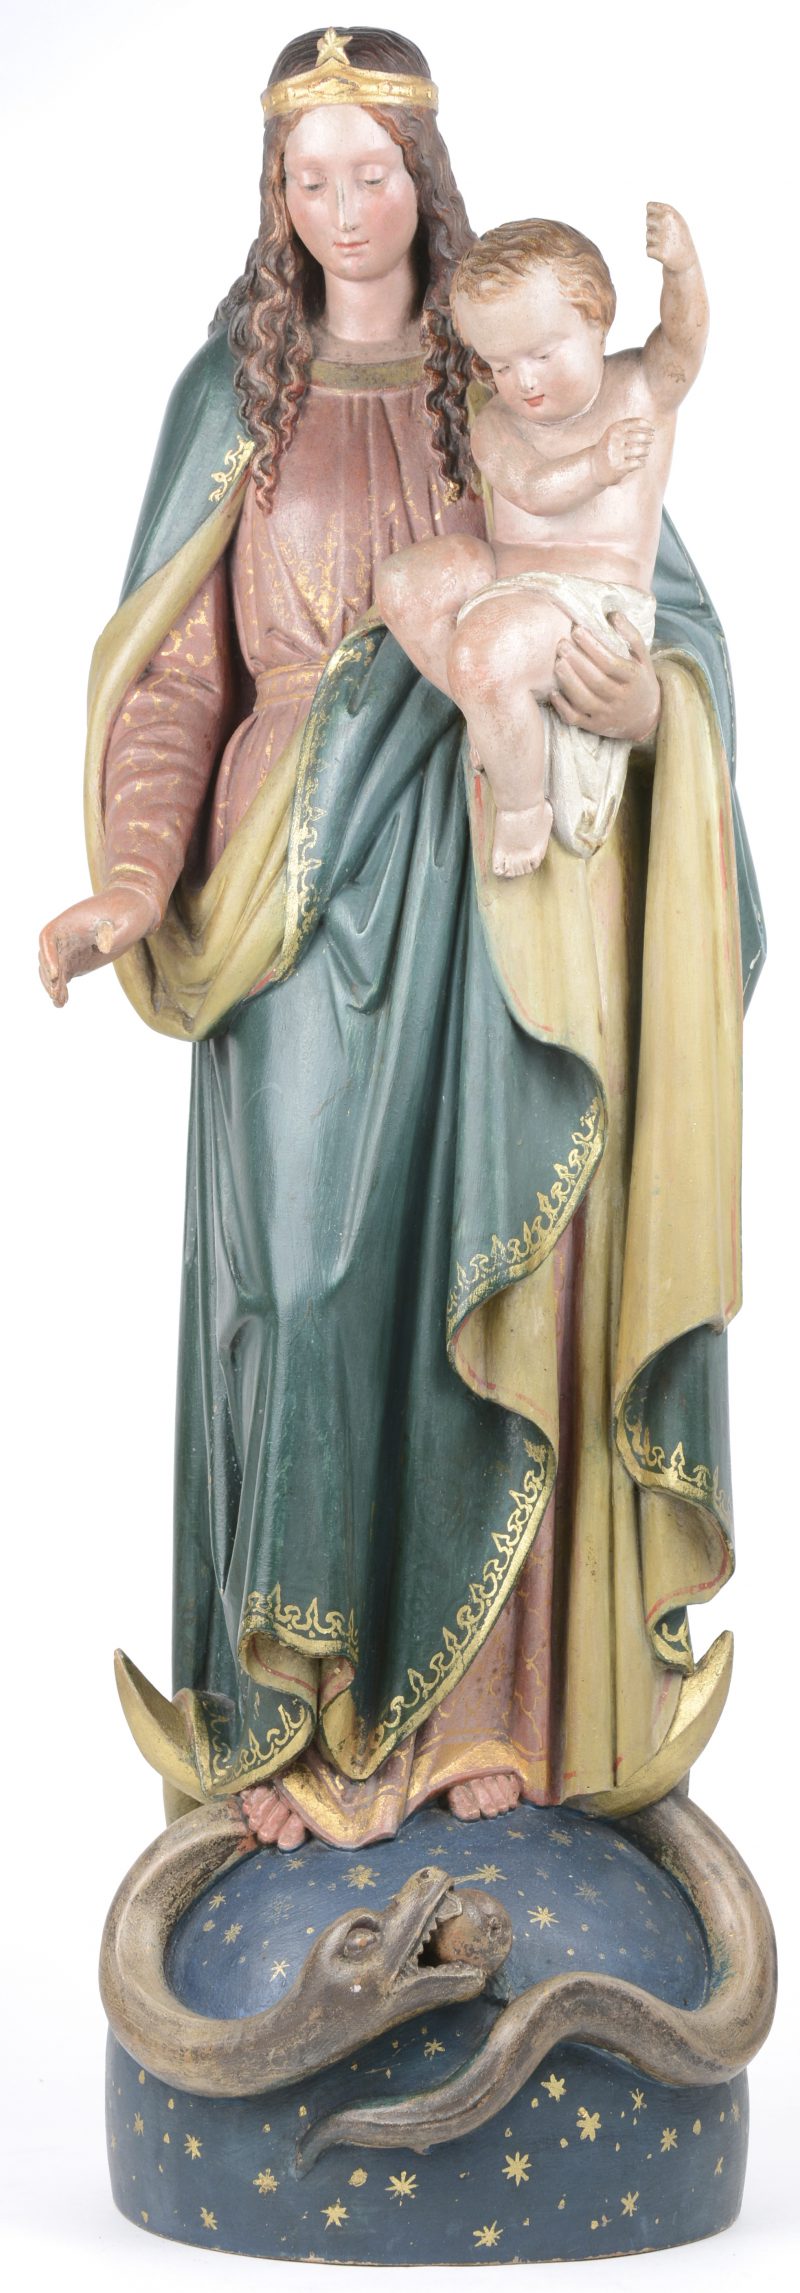 Een gepolychromeerd houten heiligenbeeld van Maria met kind staande op de slang uit de tuin van Eden. Rechterduim ontbreekt.